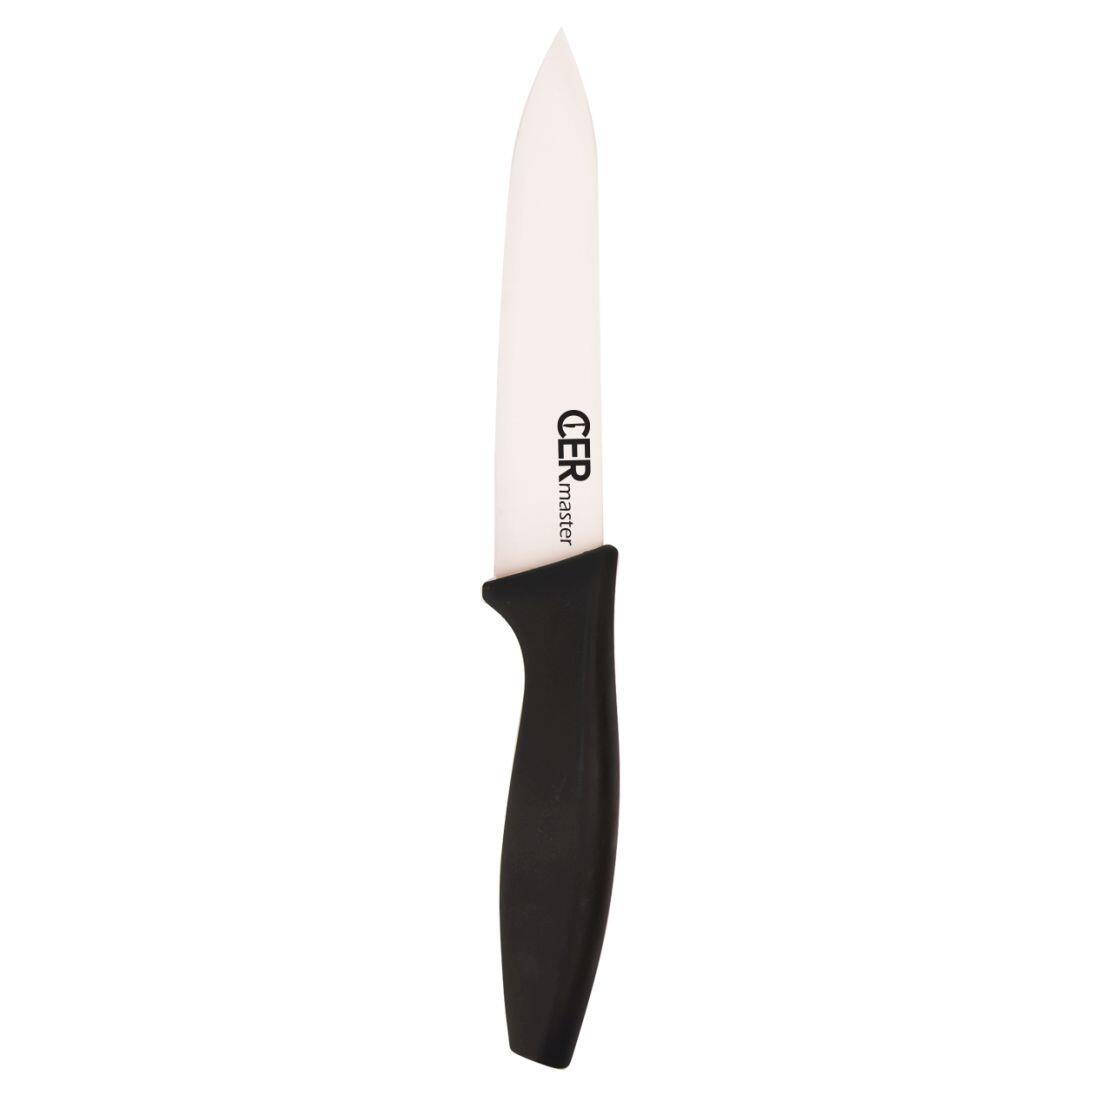 nůž keramický 12,5cm univerzální CERMASTER 0.06 Kg MAXMIX Sklad14 282160 17